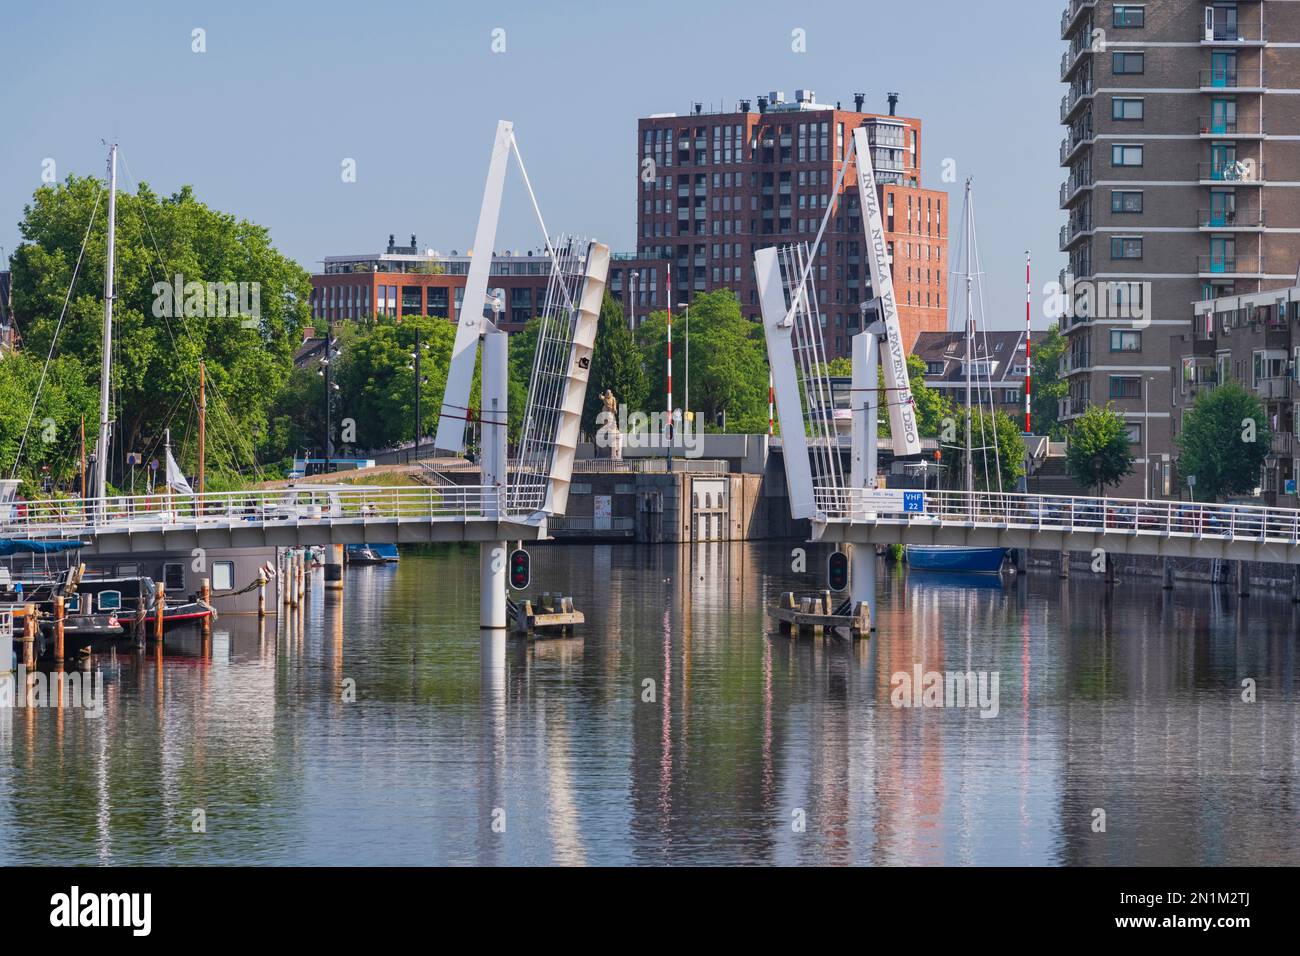 Hollande, Rotterdam, le double pont-levis connu sous le nom de pont VOC à travers l'Achterhaven avec une statue de Piet hein qui était un navigateur de 16th siècle né localement. Banque D'Images